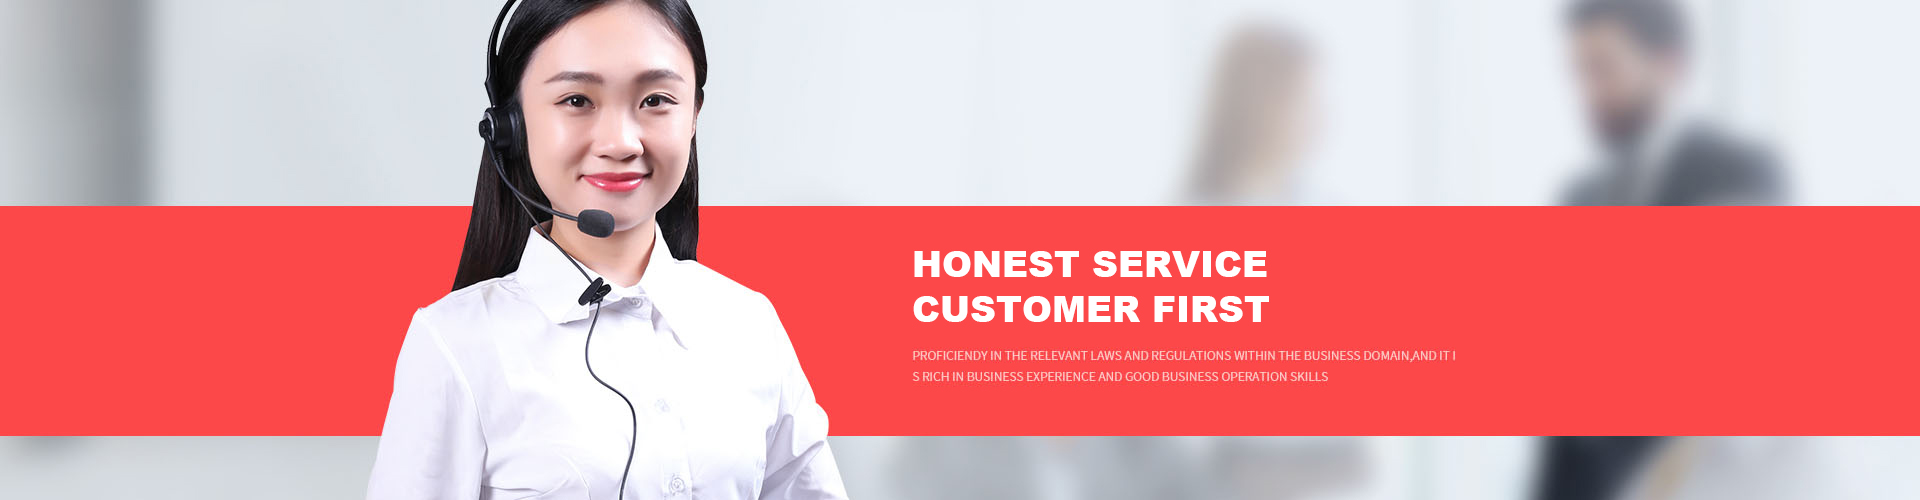 Honest Service Customer First